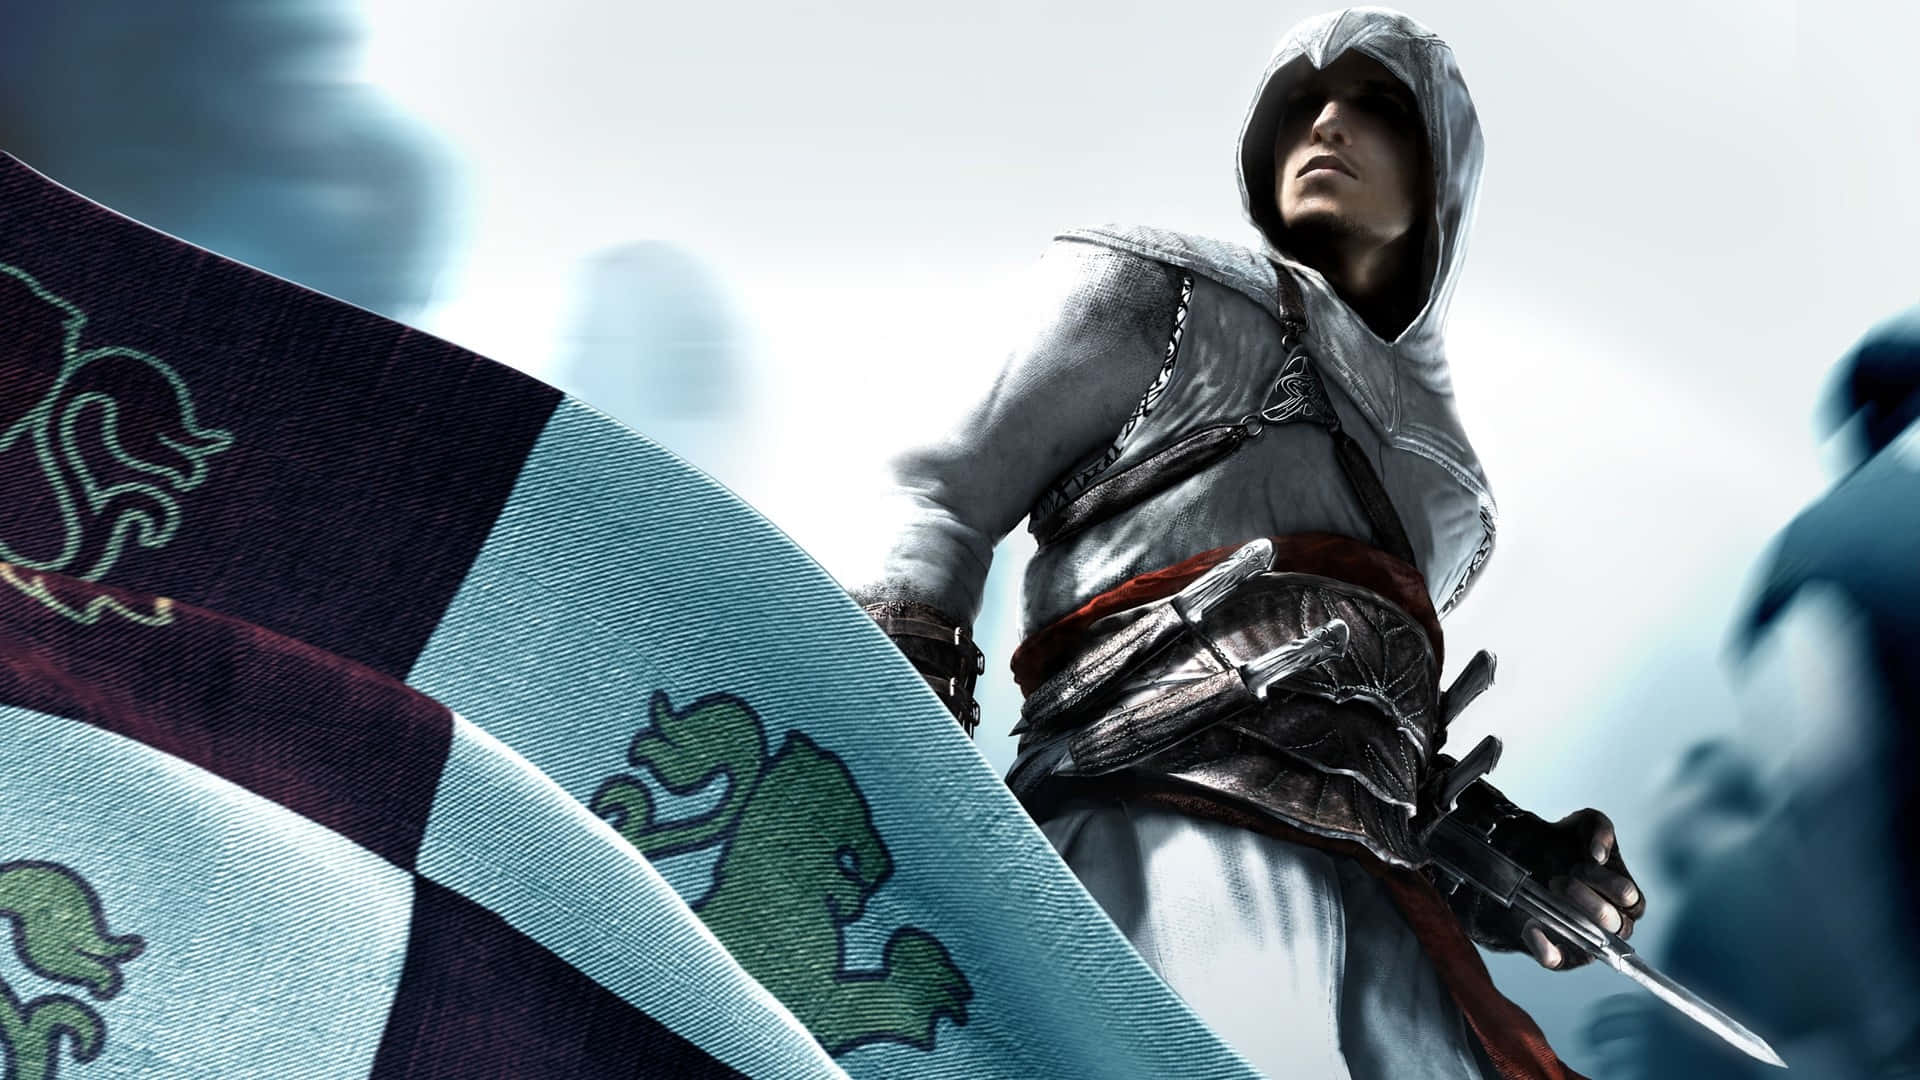 Unacaptura De Pantalla Dinámica De Desmond Miles En Acción Del Popular Videojuego Assassin's Creed. Fondo de pantalla